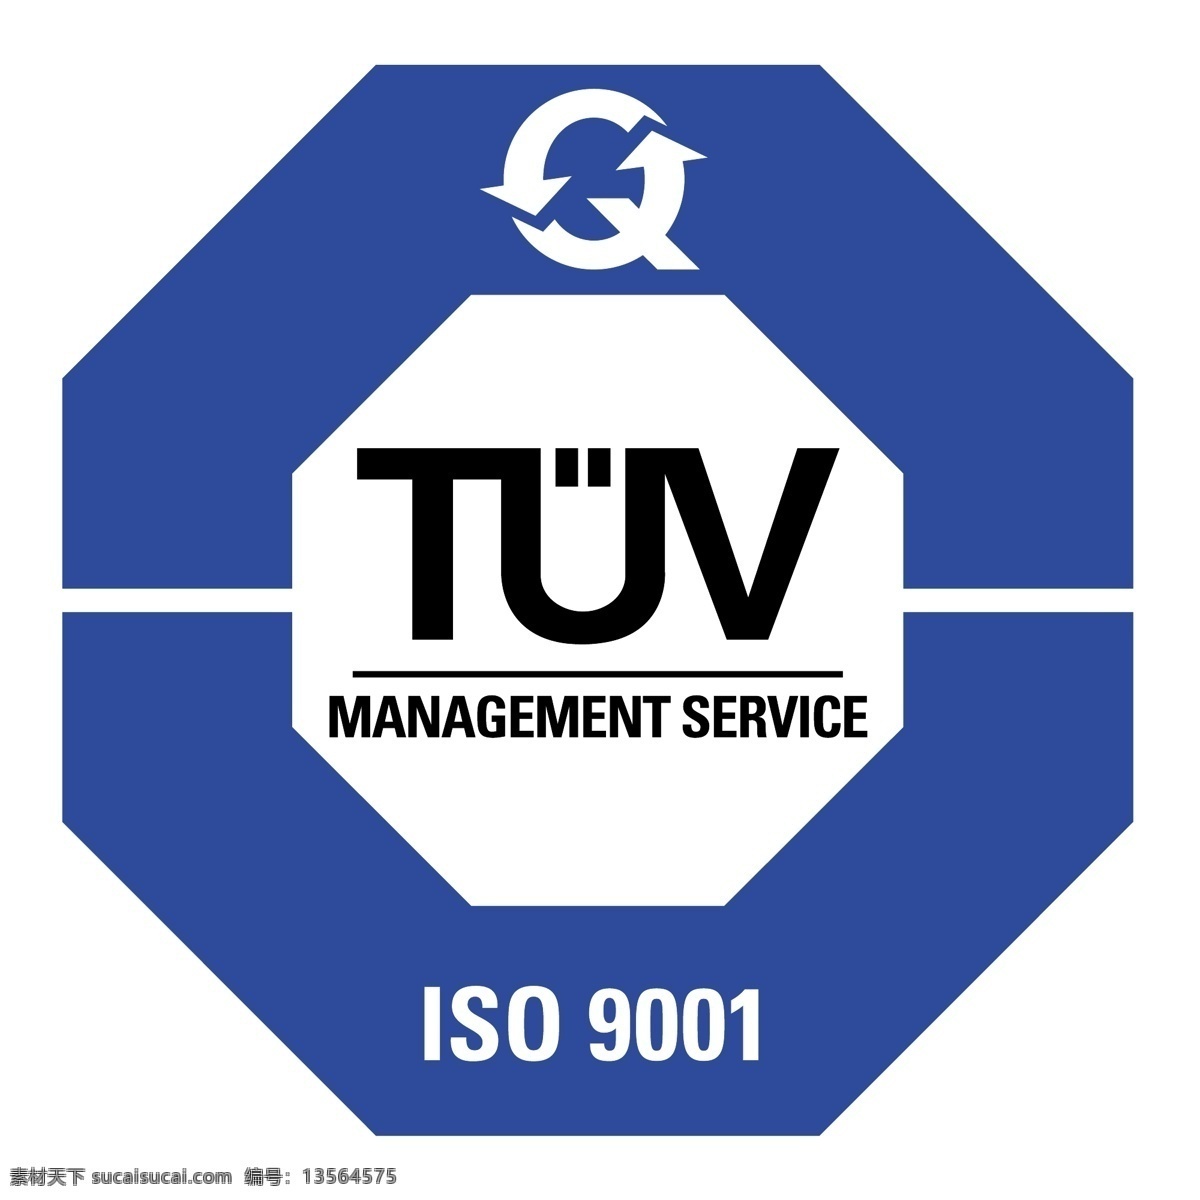 tuv 标志 认证 自由 psd源文件 logo设计